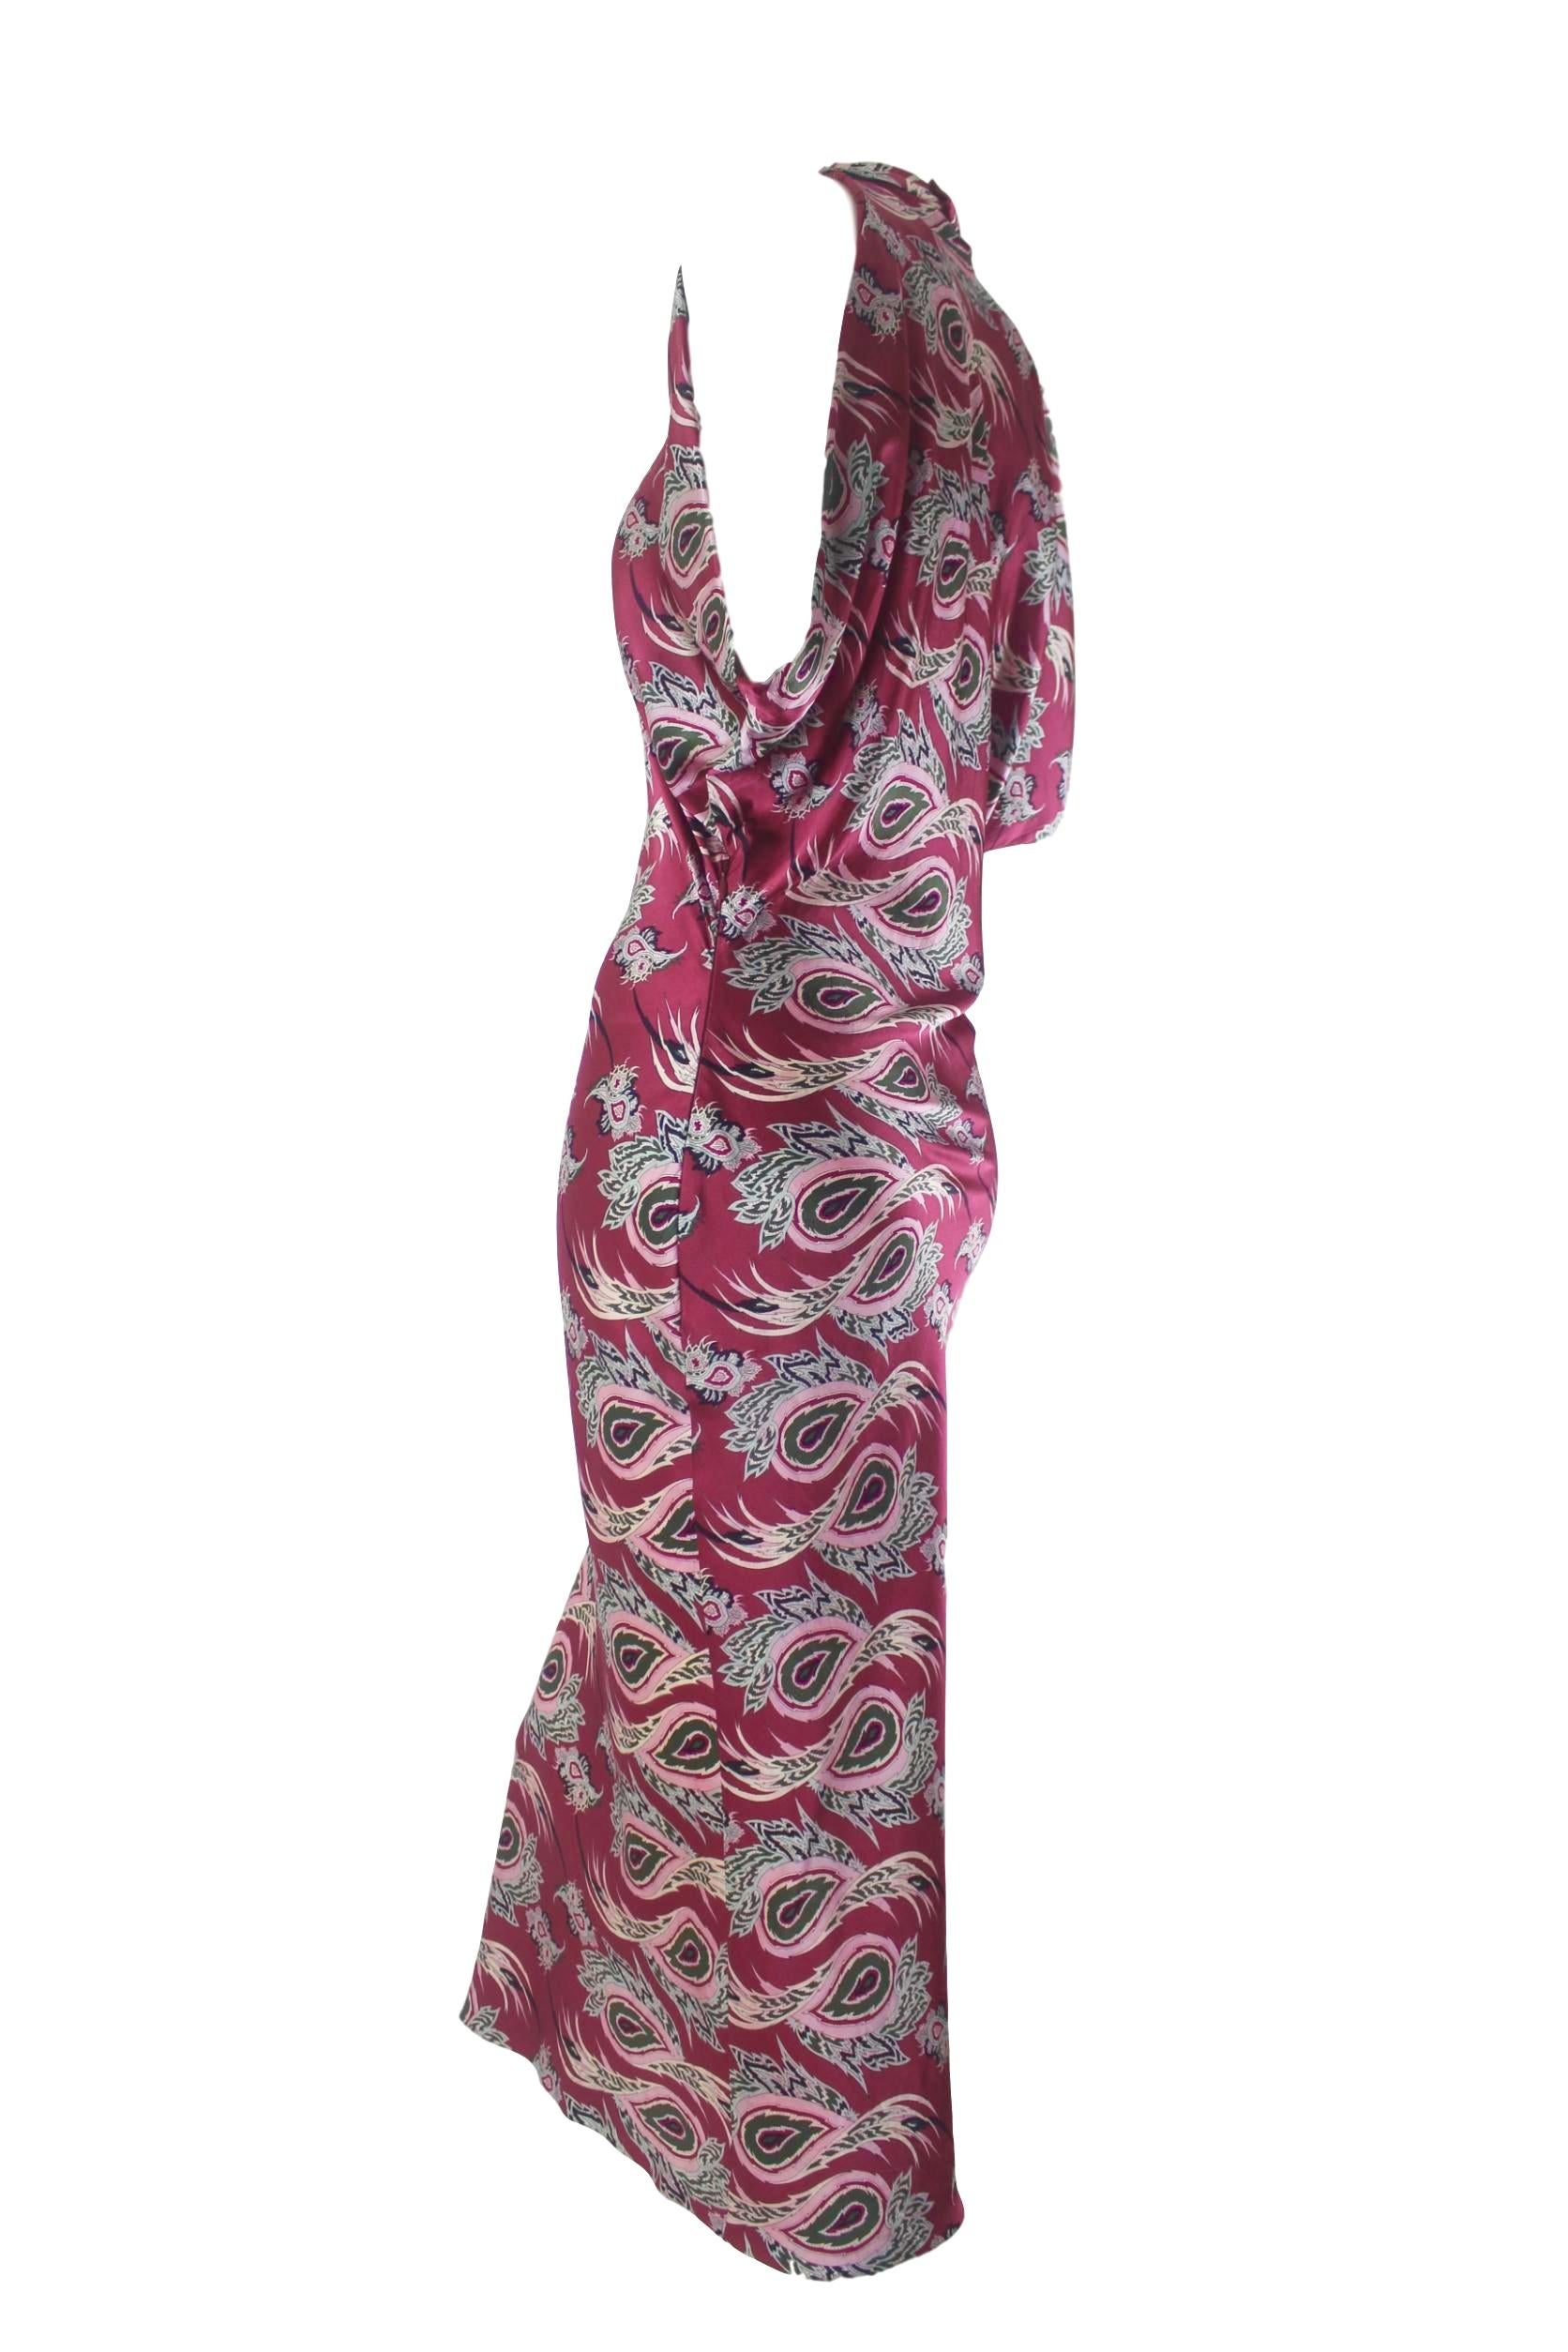 Alexander McQueen Paisley Silk Evening Dress 2001 For Sale 2